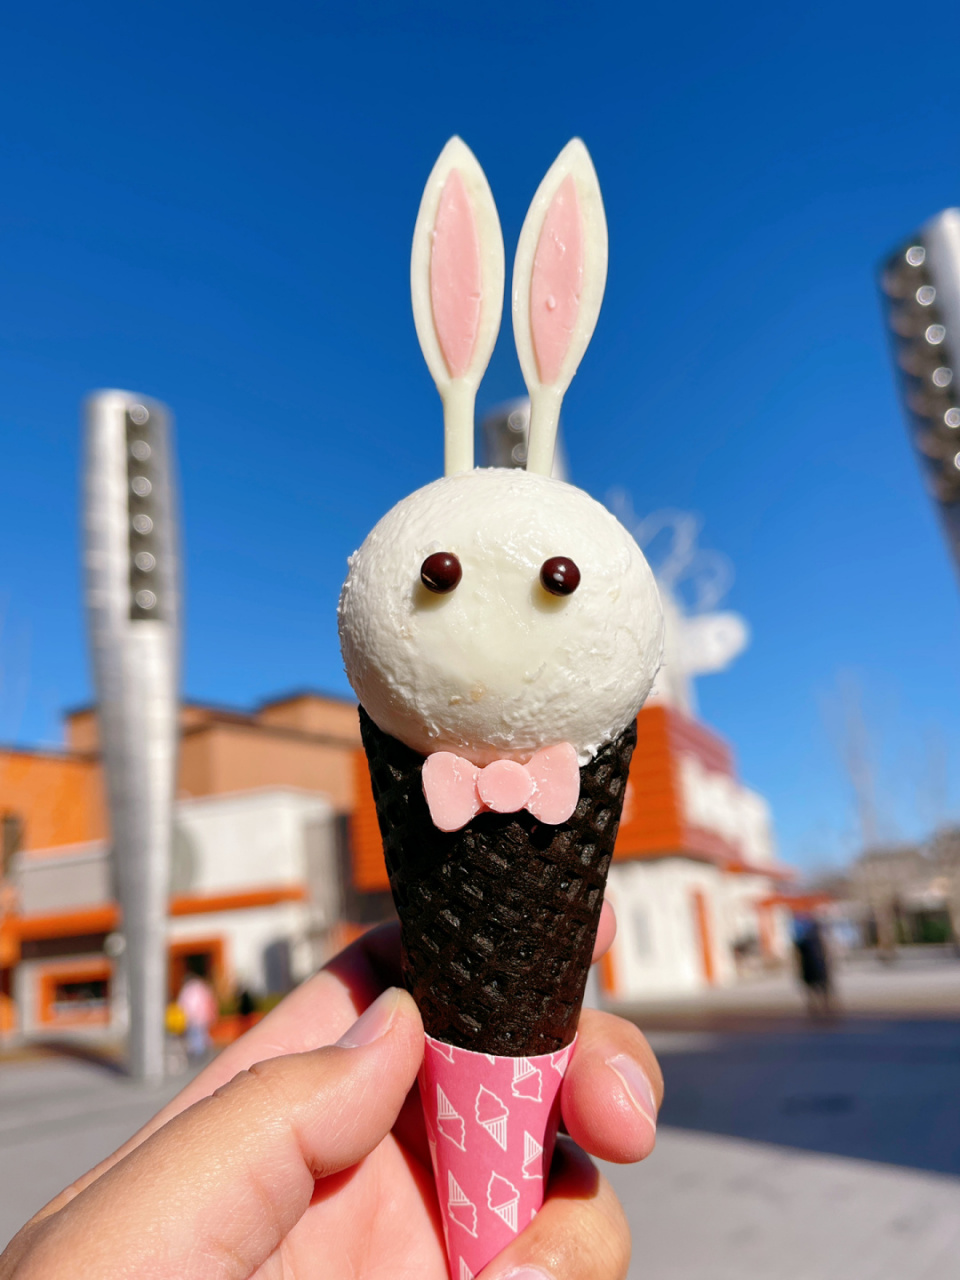 小兔子冰淇淋故事图片